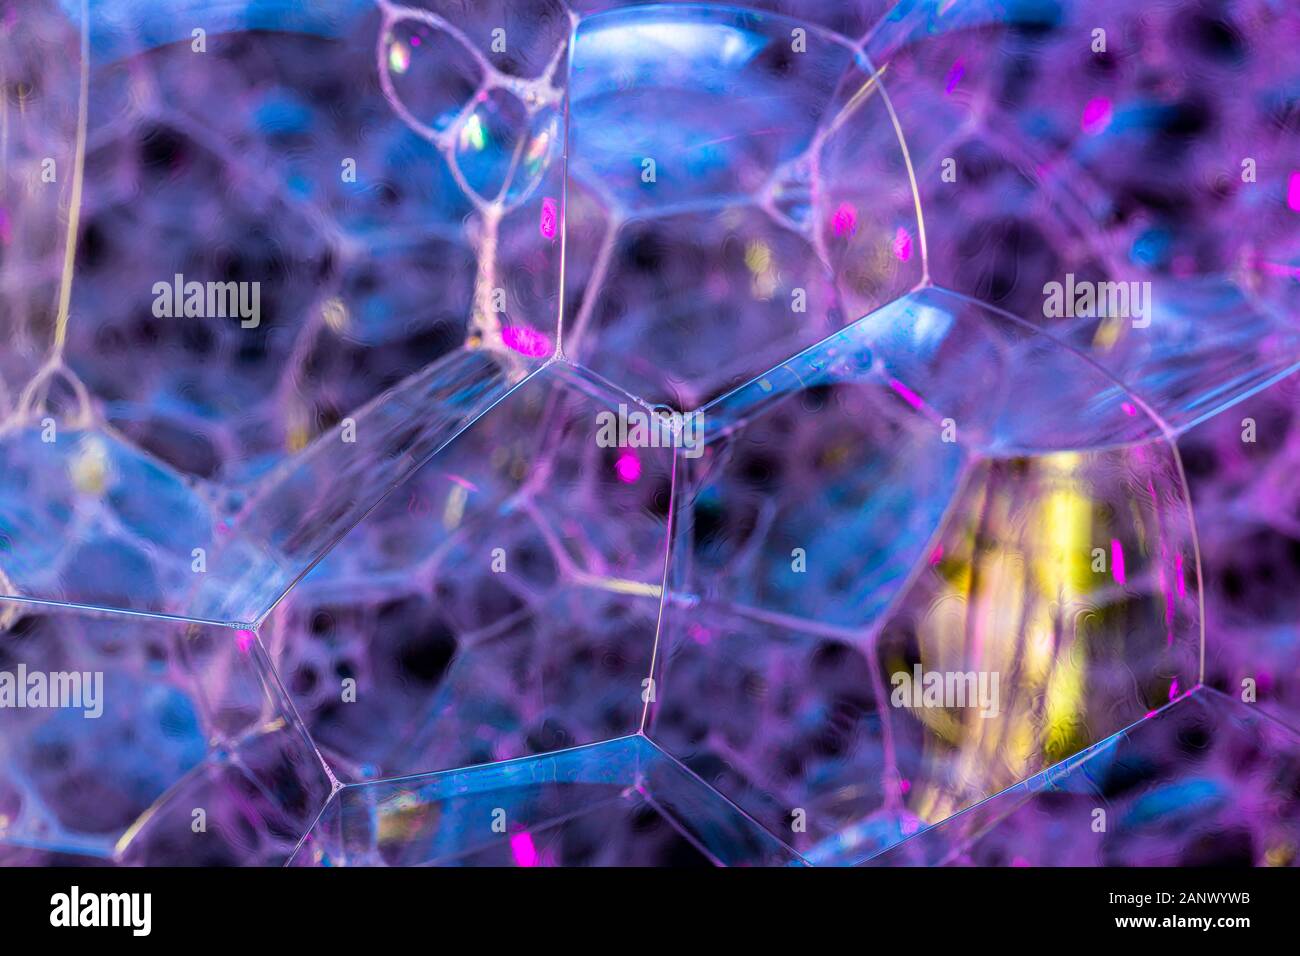 Kreative Zusammenfassung Hintergrund von bunten Blasen Struktur in Dunkelblau - magenta Töne Stockfoto